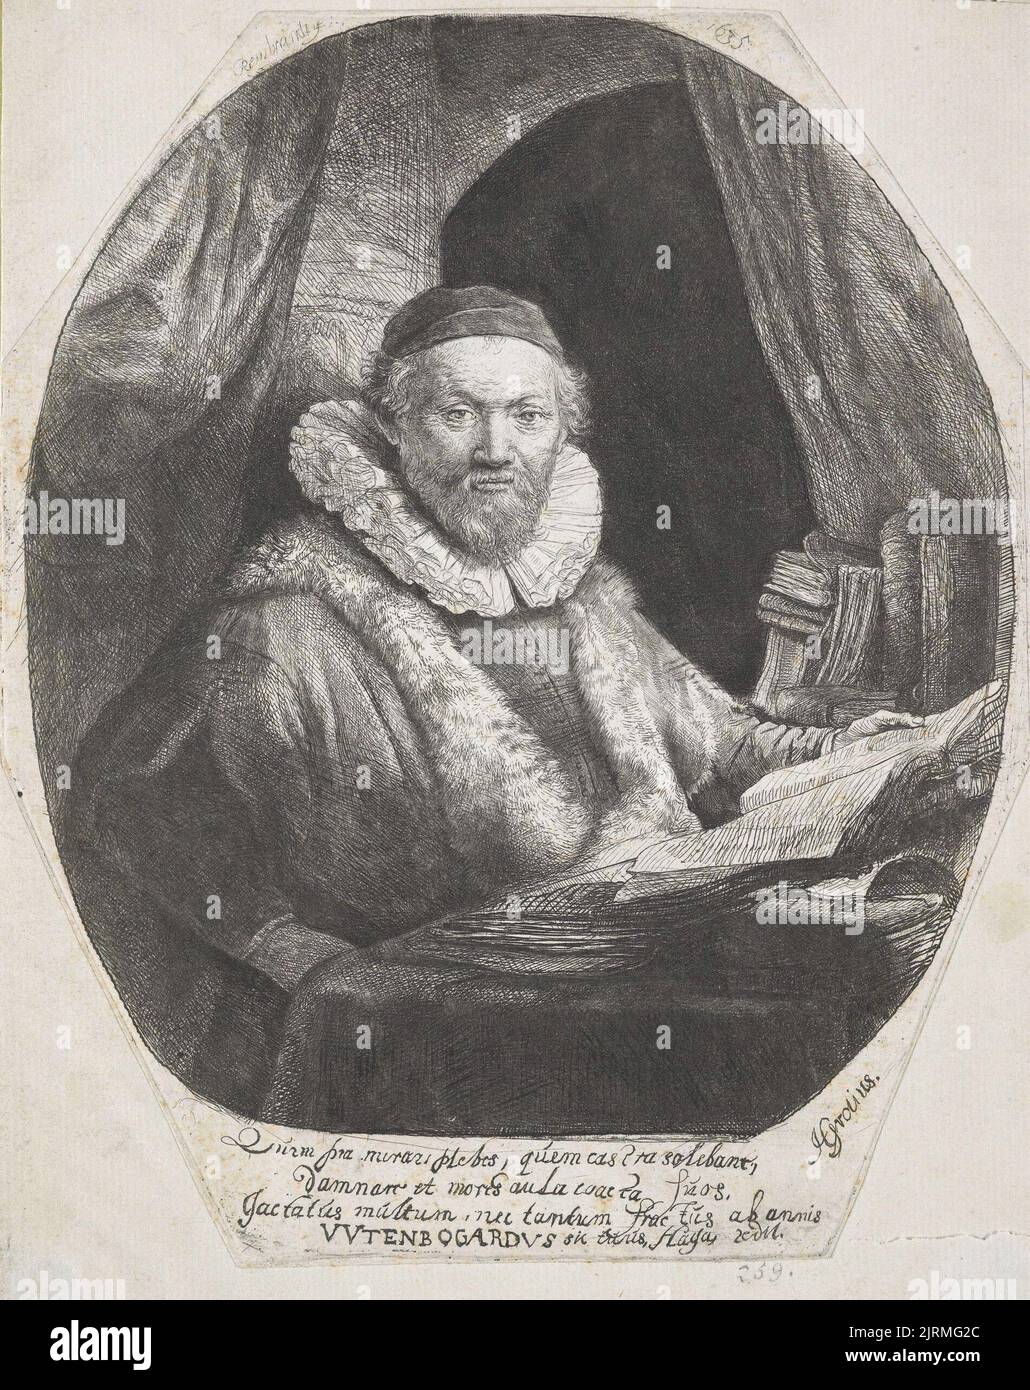 Johannes Wtenbogaert, preacher of the Remonstrants., 1635, Netherlands, by Rembrandt van Rijn. Gift of Bishop Monrad, 1869. Stock Photo